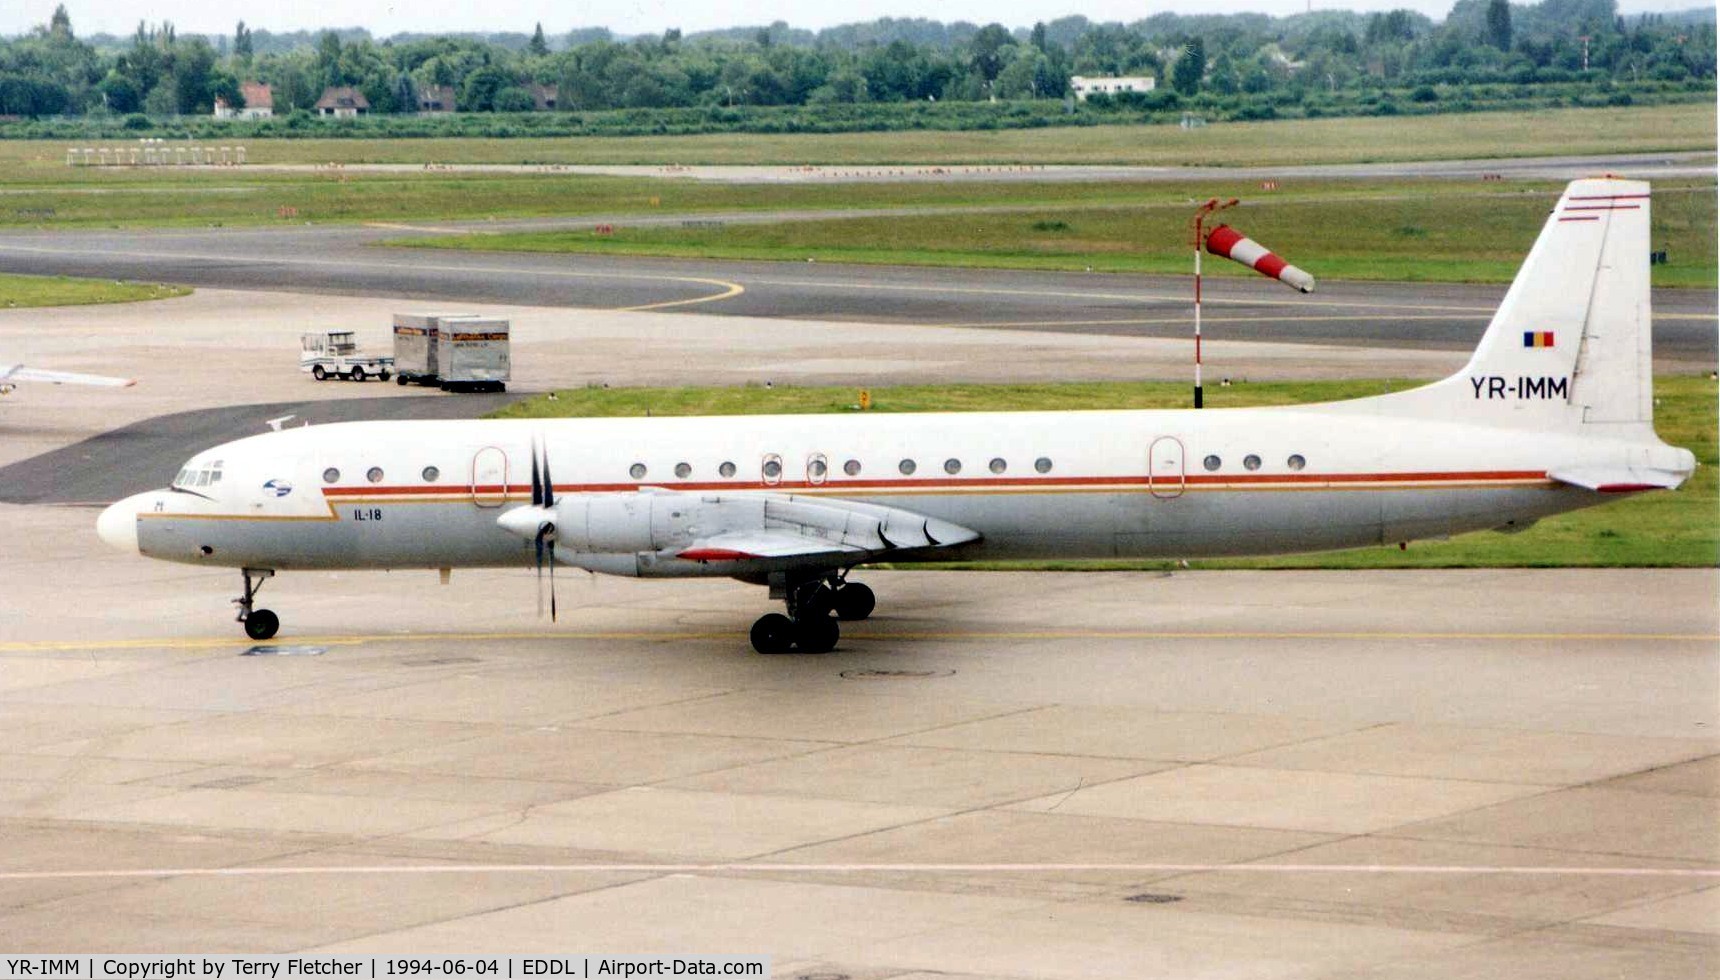 YR-IMM, 1967 Ilyushin Il-18D C/N 187009904, Romavia Il-18 taxying at Dusseldorf in 1994